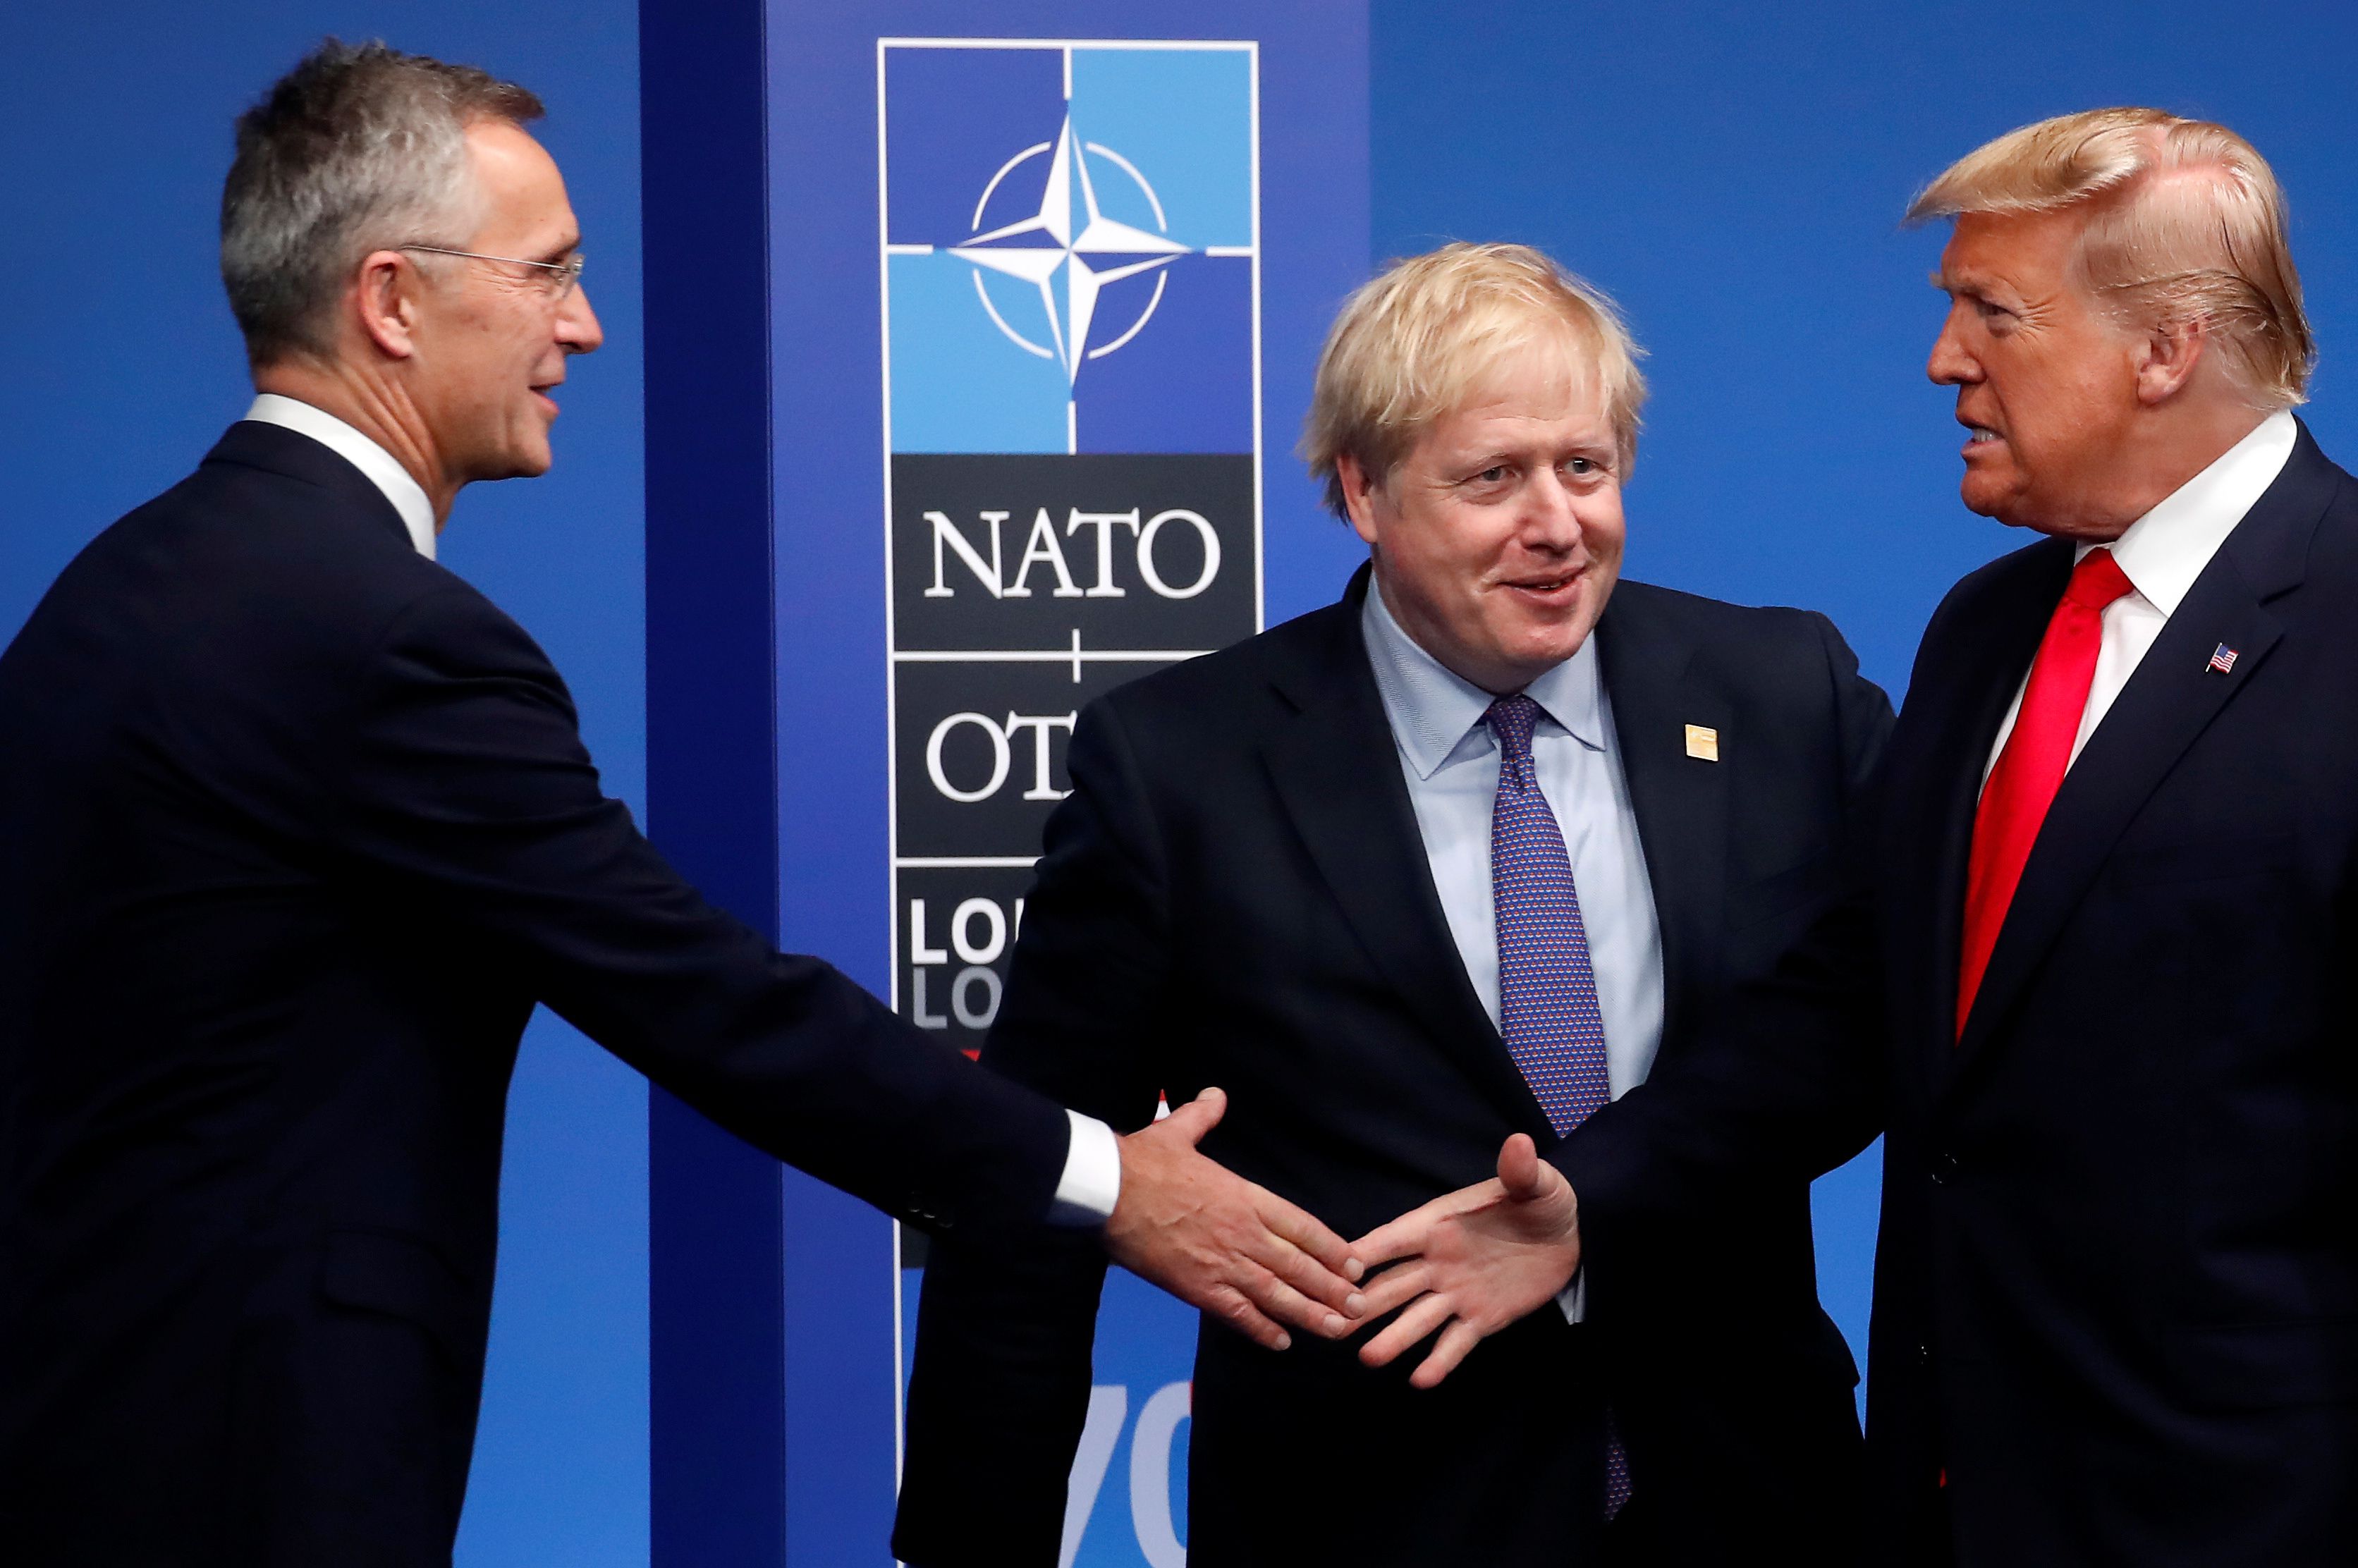 El presidente de los Estados Unidos Donald Trump se saluda con el secretario general de la OTAN Jens Stoltenberg, en medio el primer ministro británico Boris Johnson. (Foto Prensa Libre: AFP)